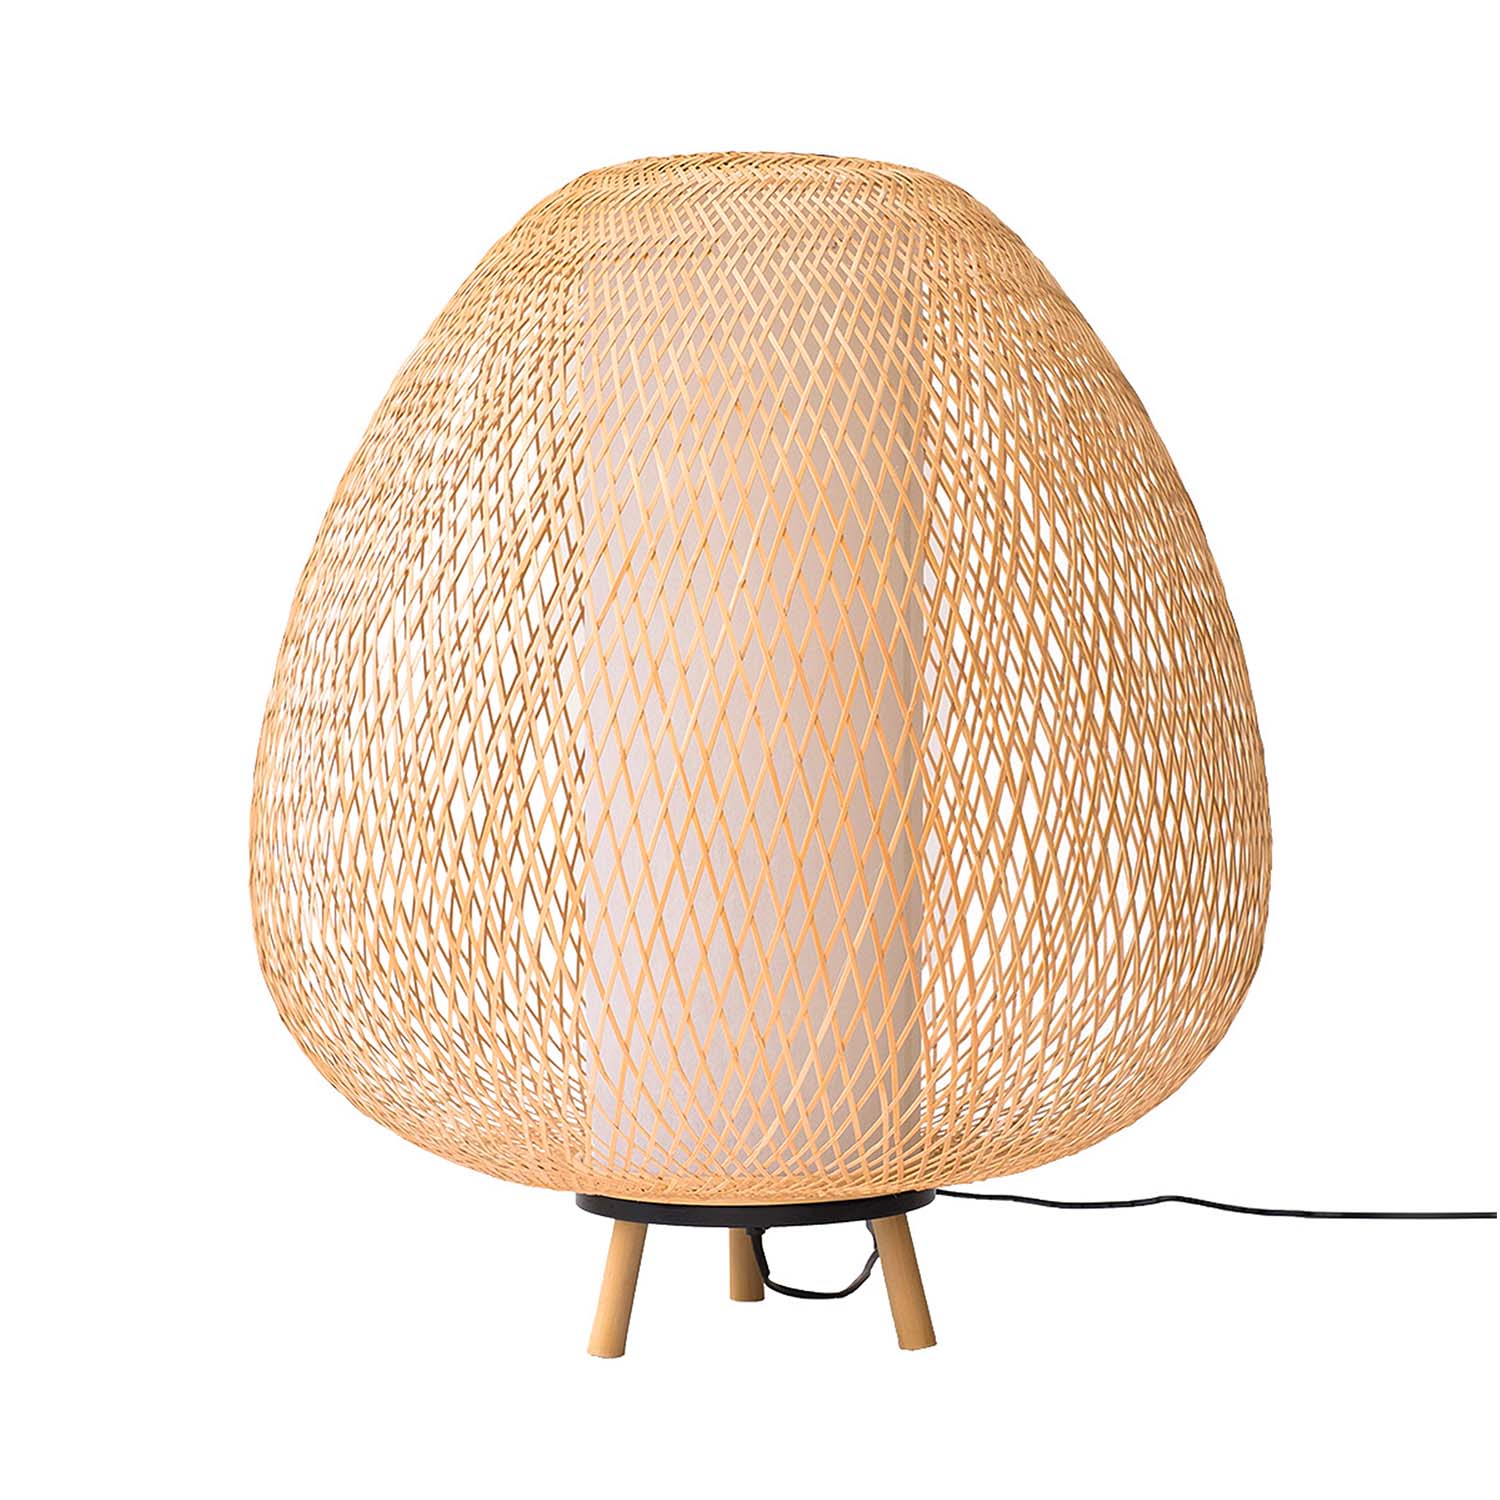 TWIGGY Floor - Lampe sur pied forme oeuf en bambou tressé